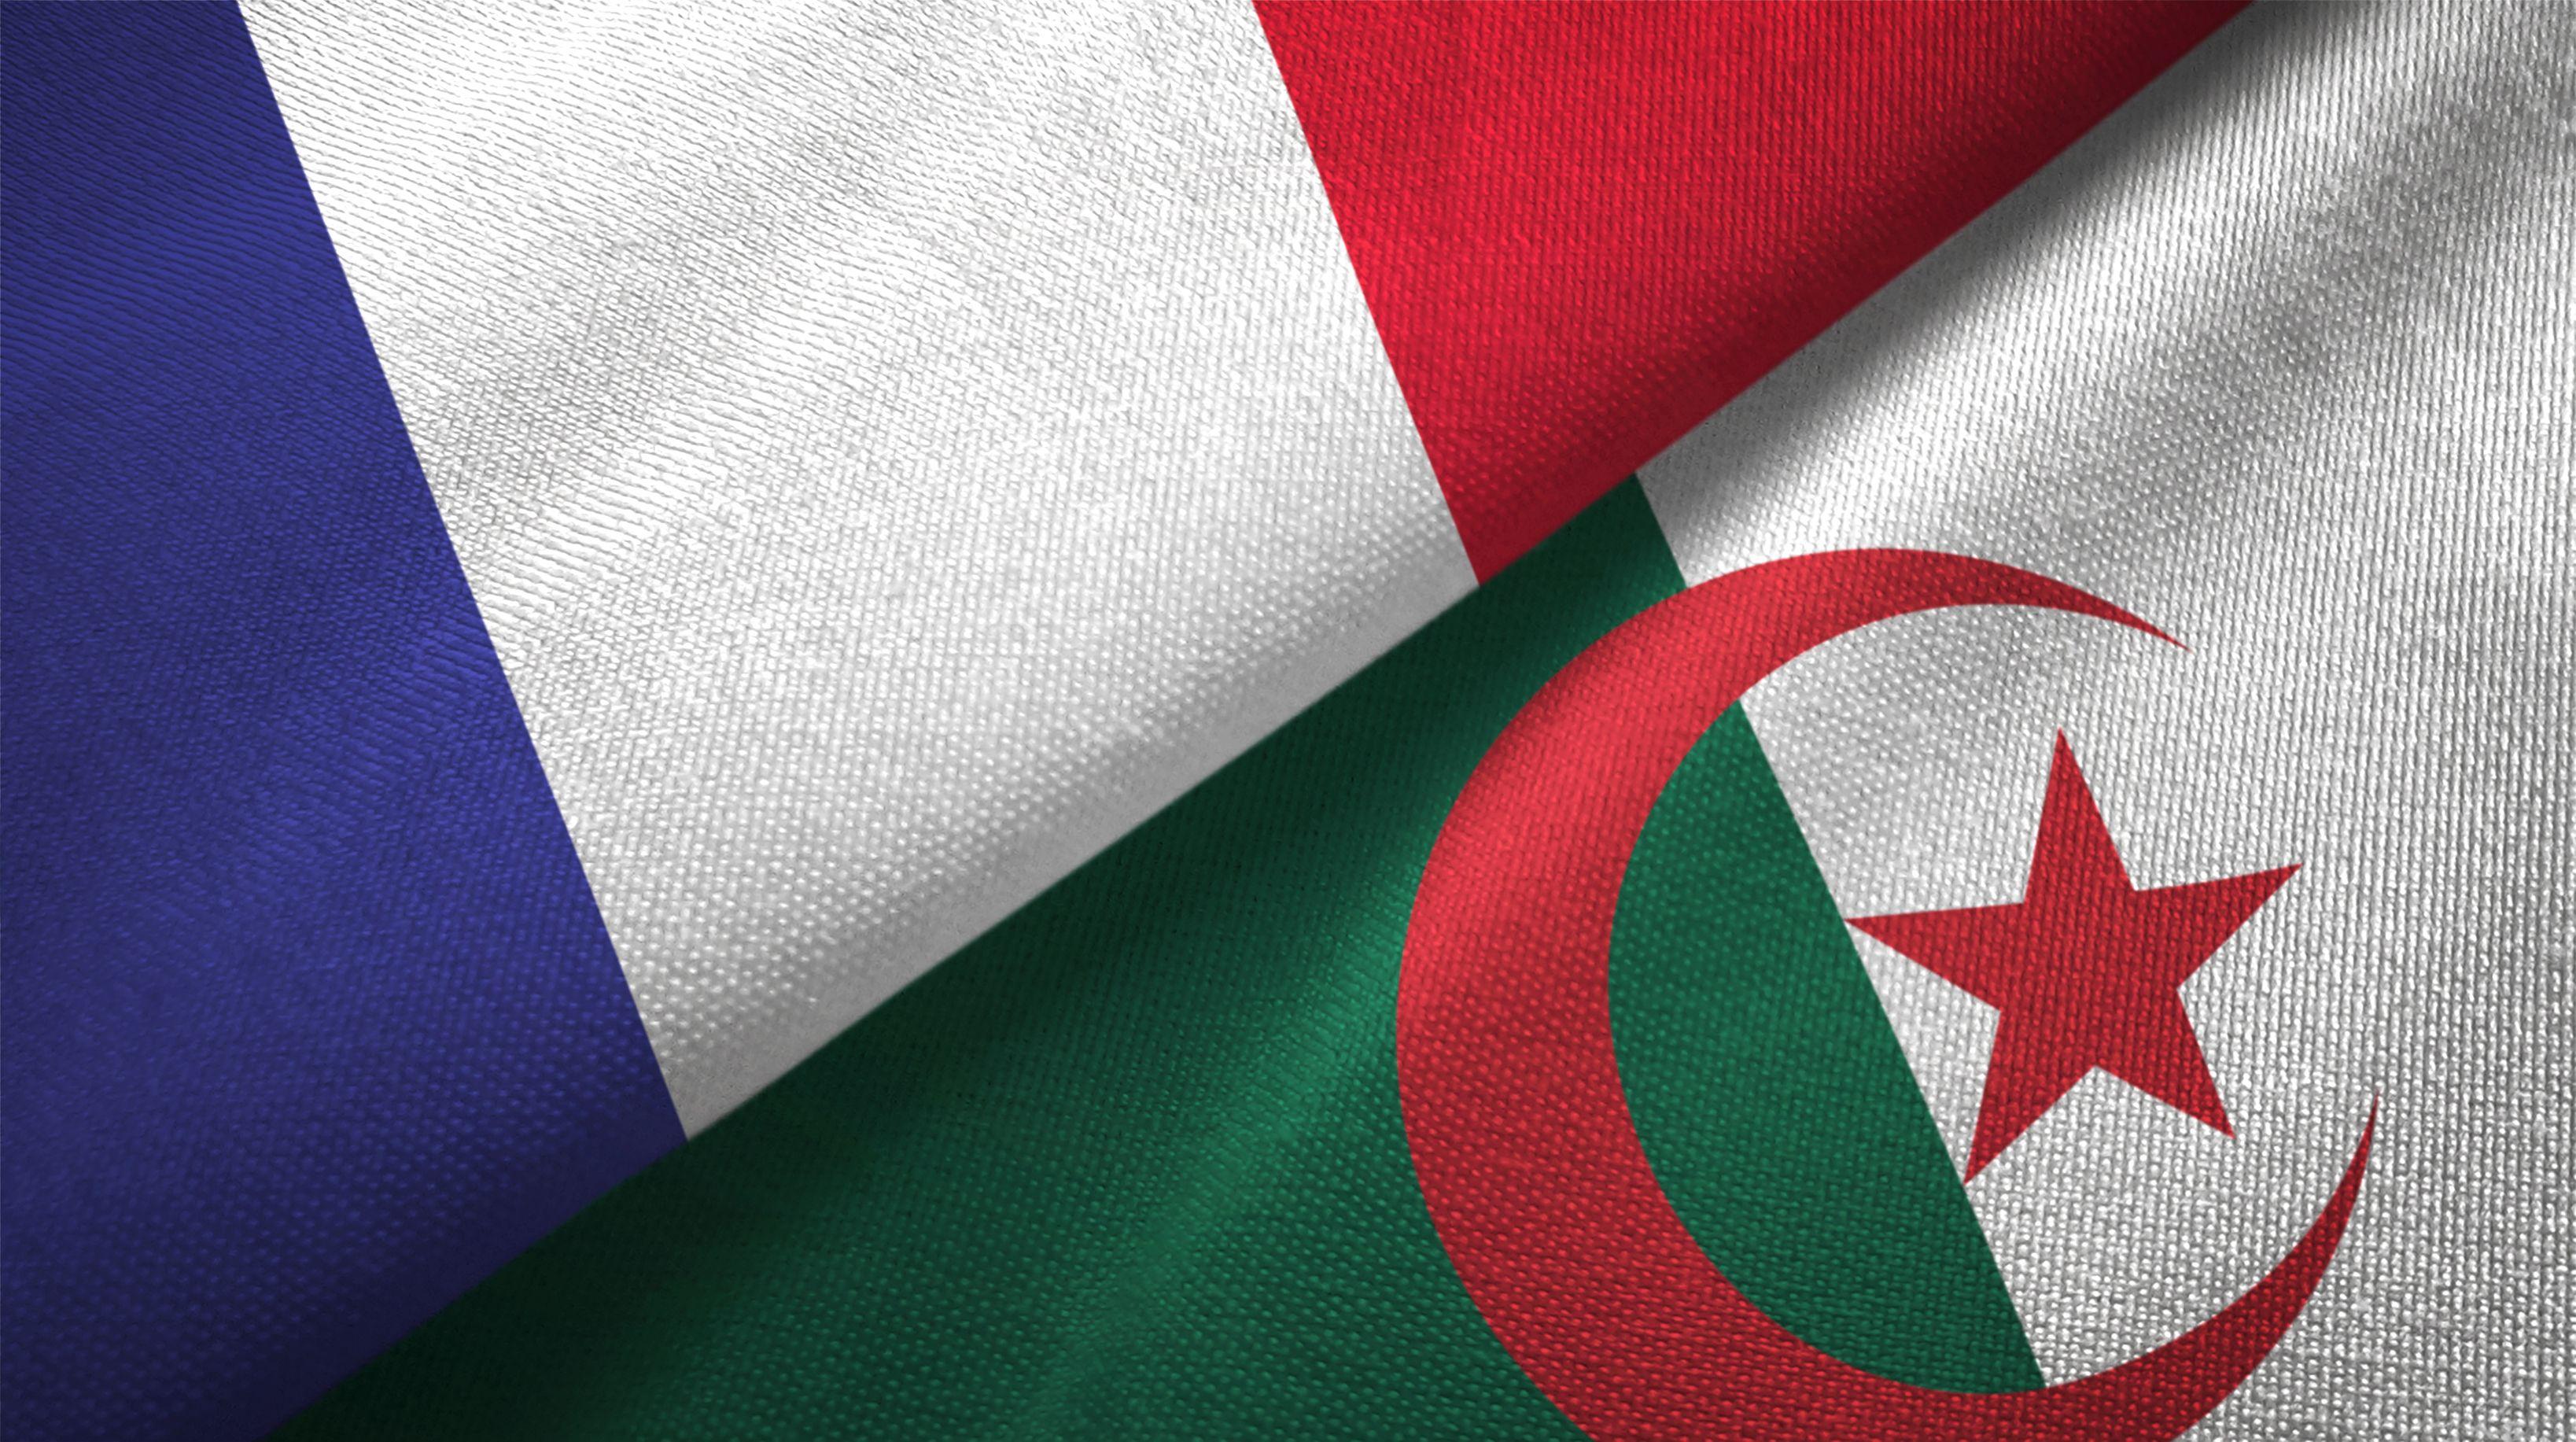 دعوات لإغلاق مدارس البعثة الفرنسية في المغرب تثير الجدل عبر مواقع التواصل الاجتماعي.